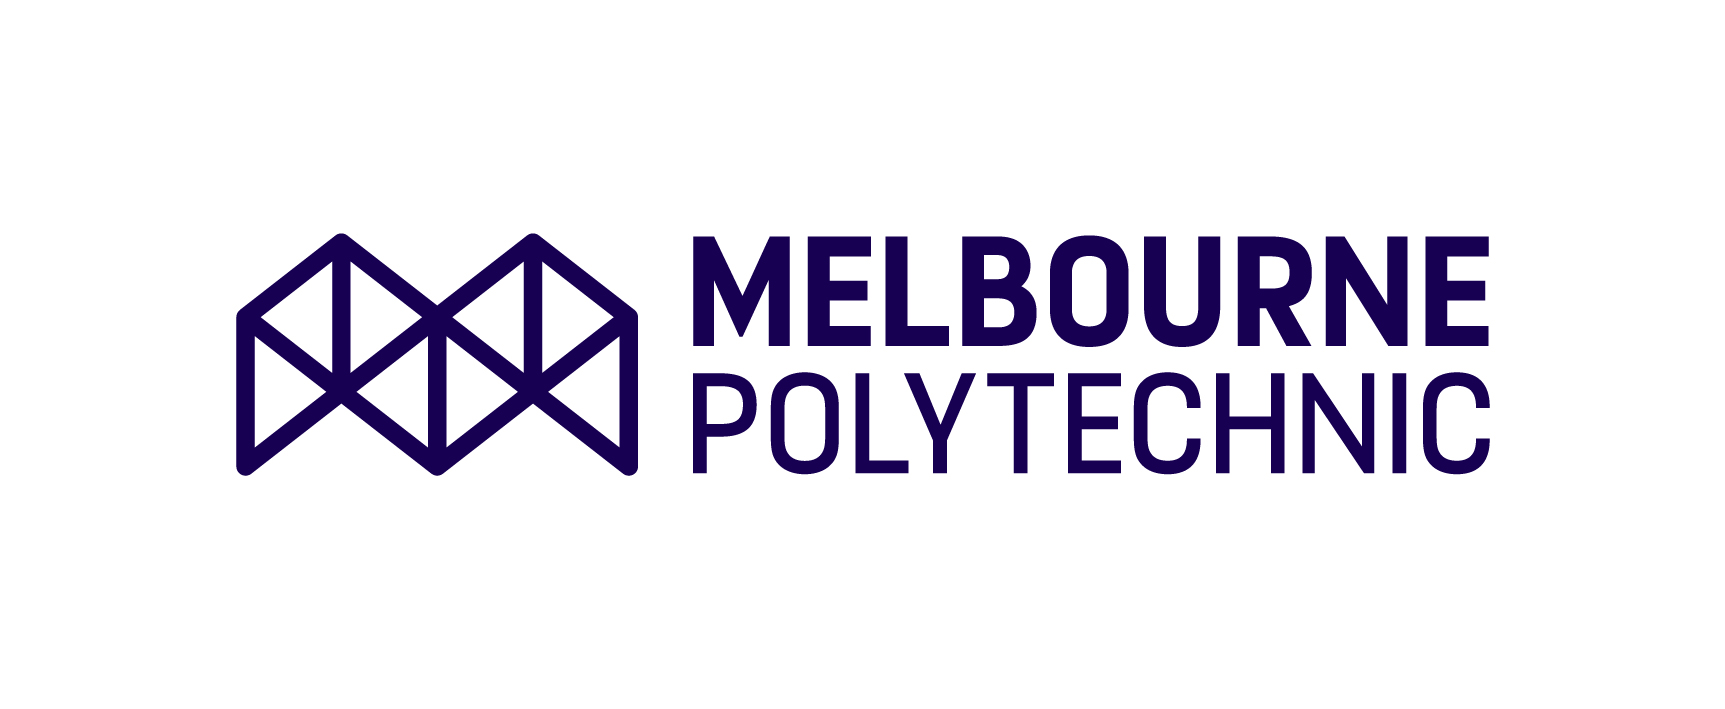 melbourne polytechnic image logo